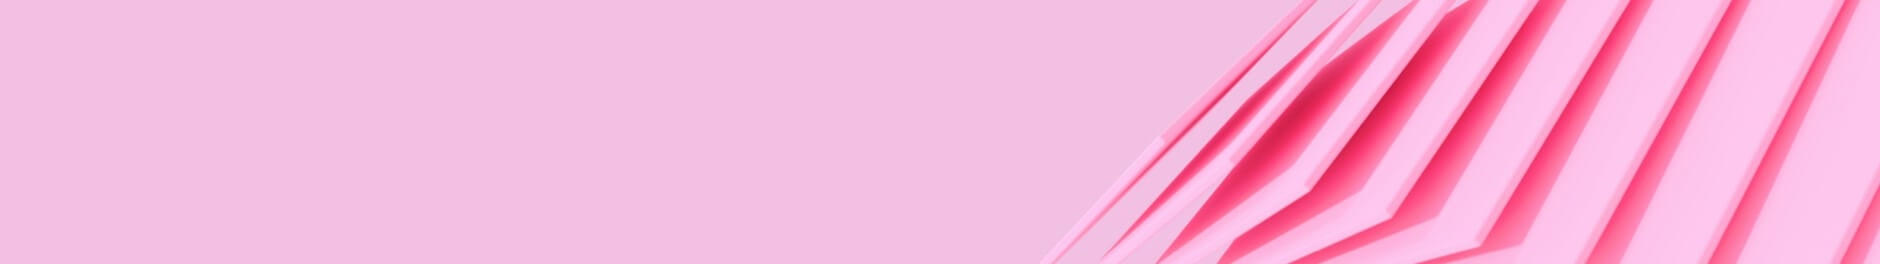 Schwebende rosafarbene Karten in einer rosafarbenen Umgebung